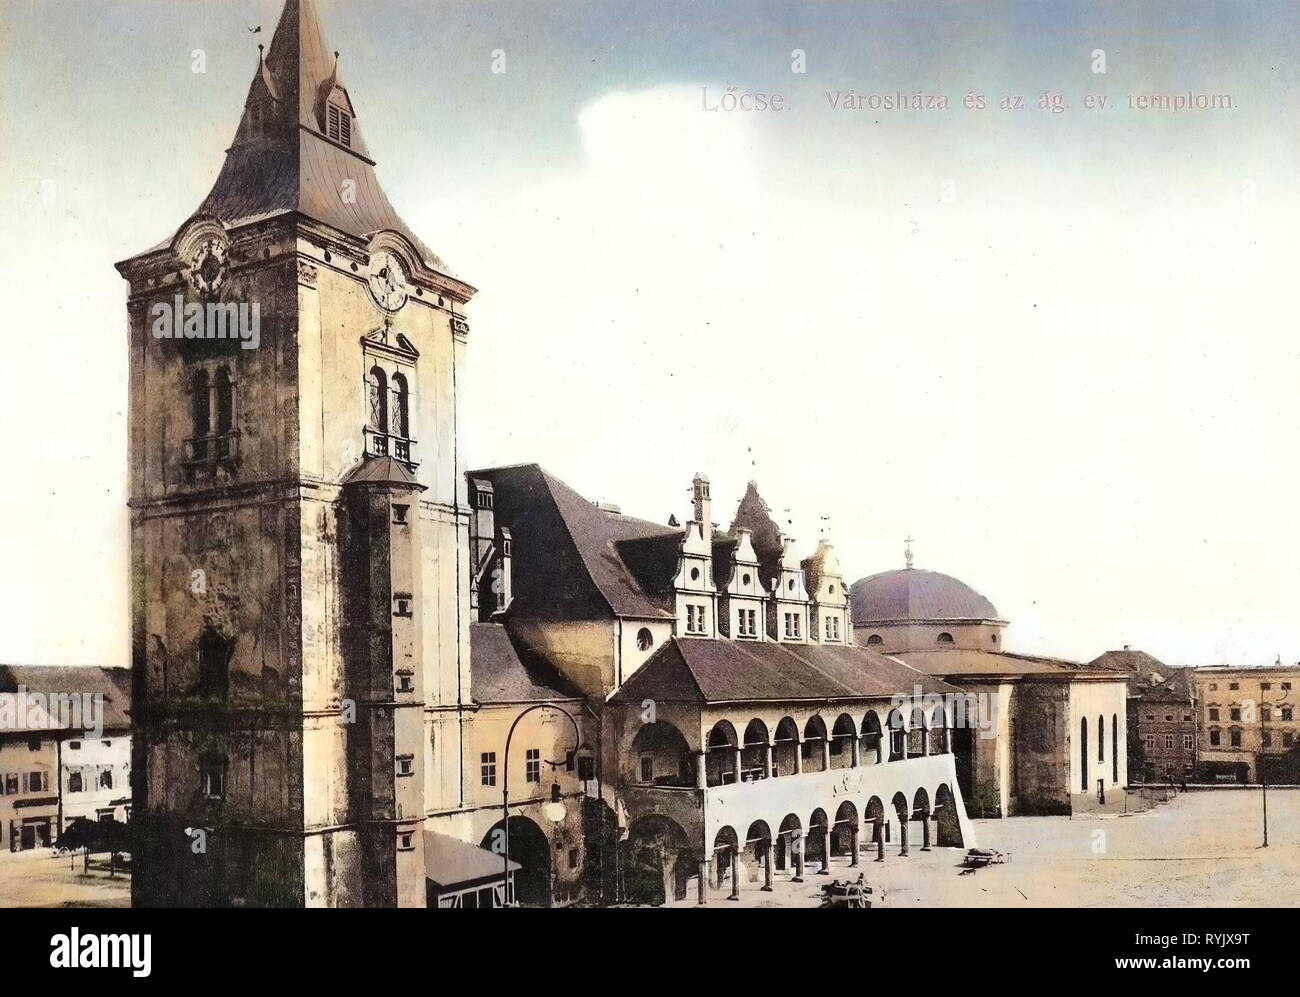 Levoča Town Hall, Evangelical Lutheran Church (Levoča), 1911, Prešov Region, Löcse, Varoshaza es az ag. ev. templom Stock Photo